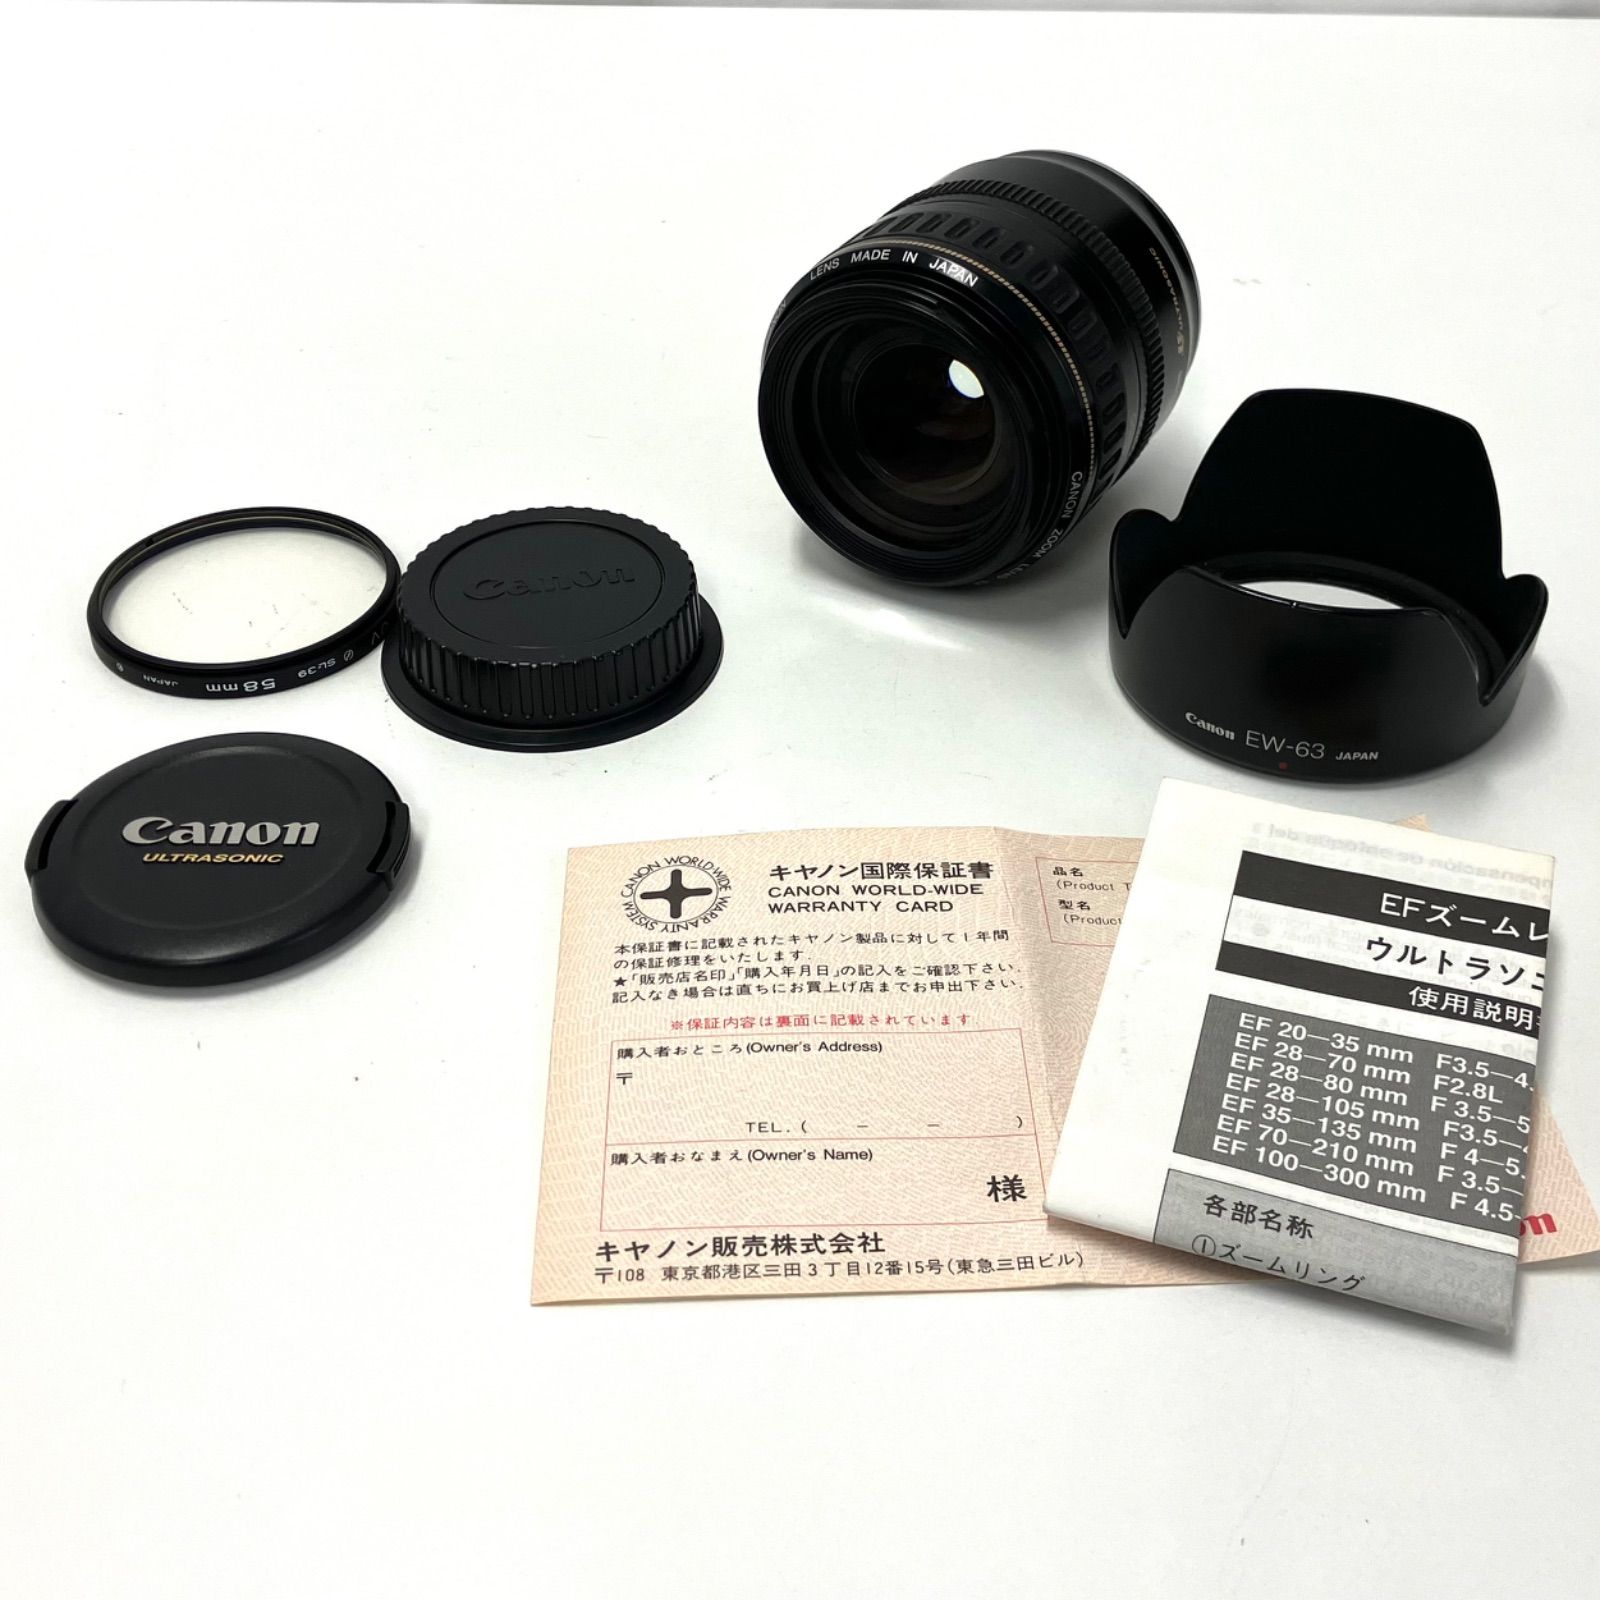 Canon ウルトラソニック LENS EF 28-105mm F3.5-4.5 - フィルムカメラ